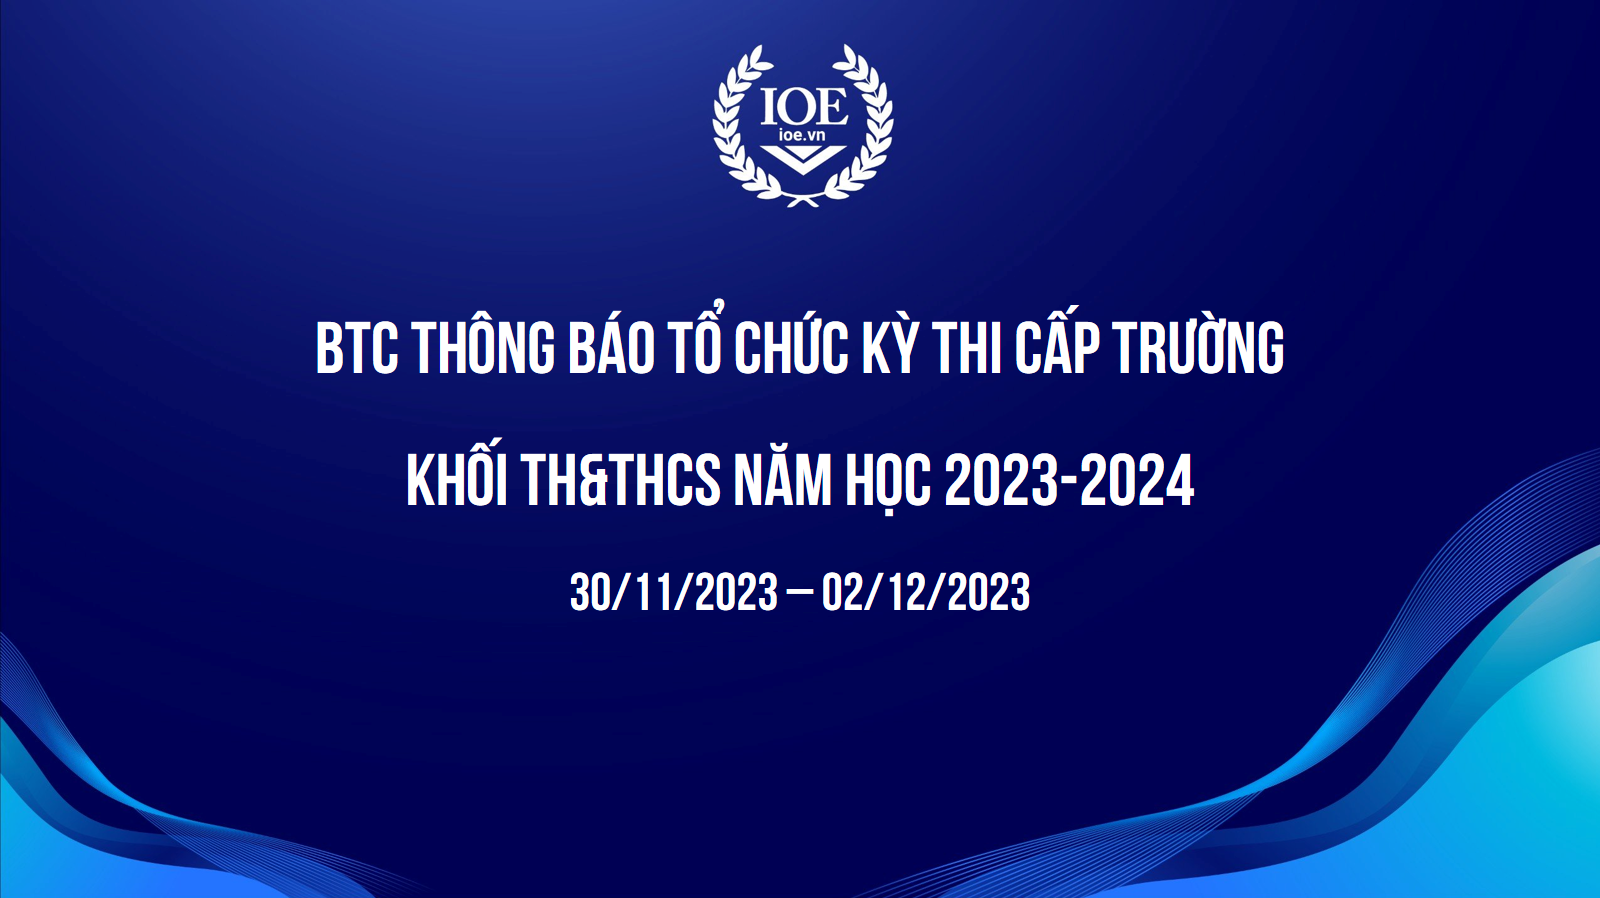 BTC Thông báo tổ chức kỳ thi cấp trường khối TH&THCS năm học 2023-2024